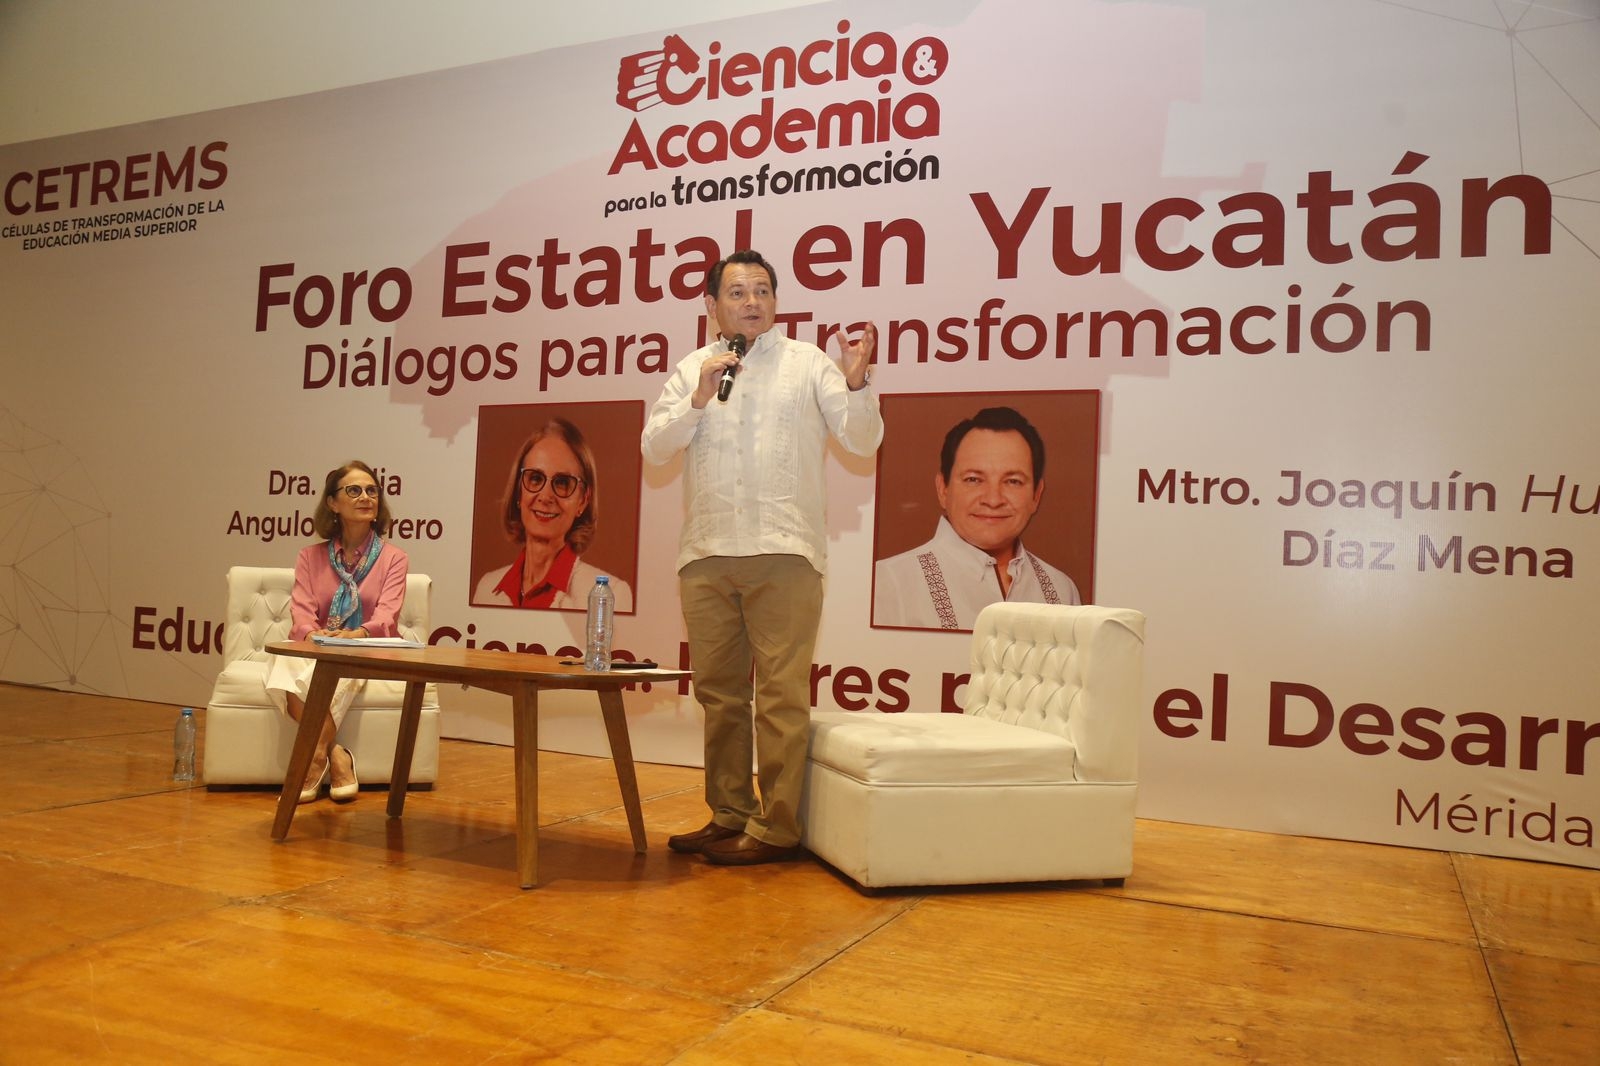 Joaquín Díaz Mena hablará sobre sus propuestas sobre la educación